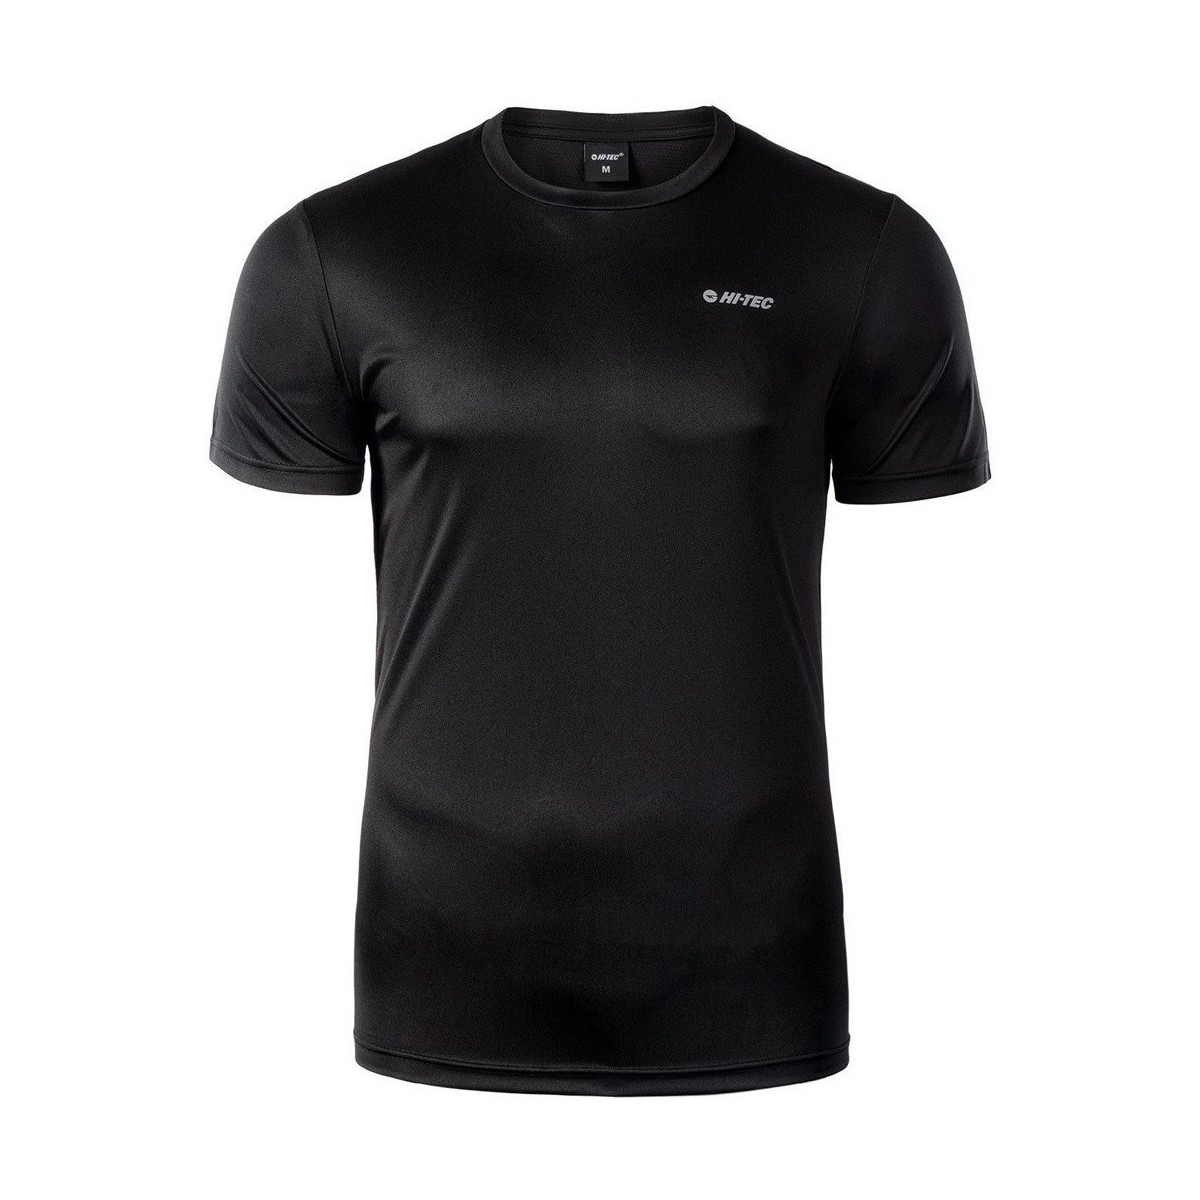 Vêtements Homme Heron Preston x NASA Sweatshirt Sibic Noir